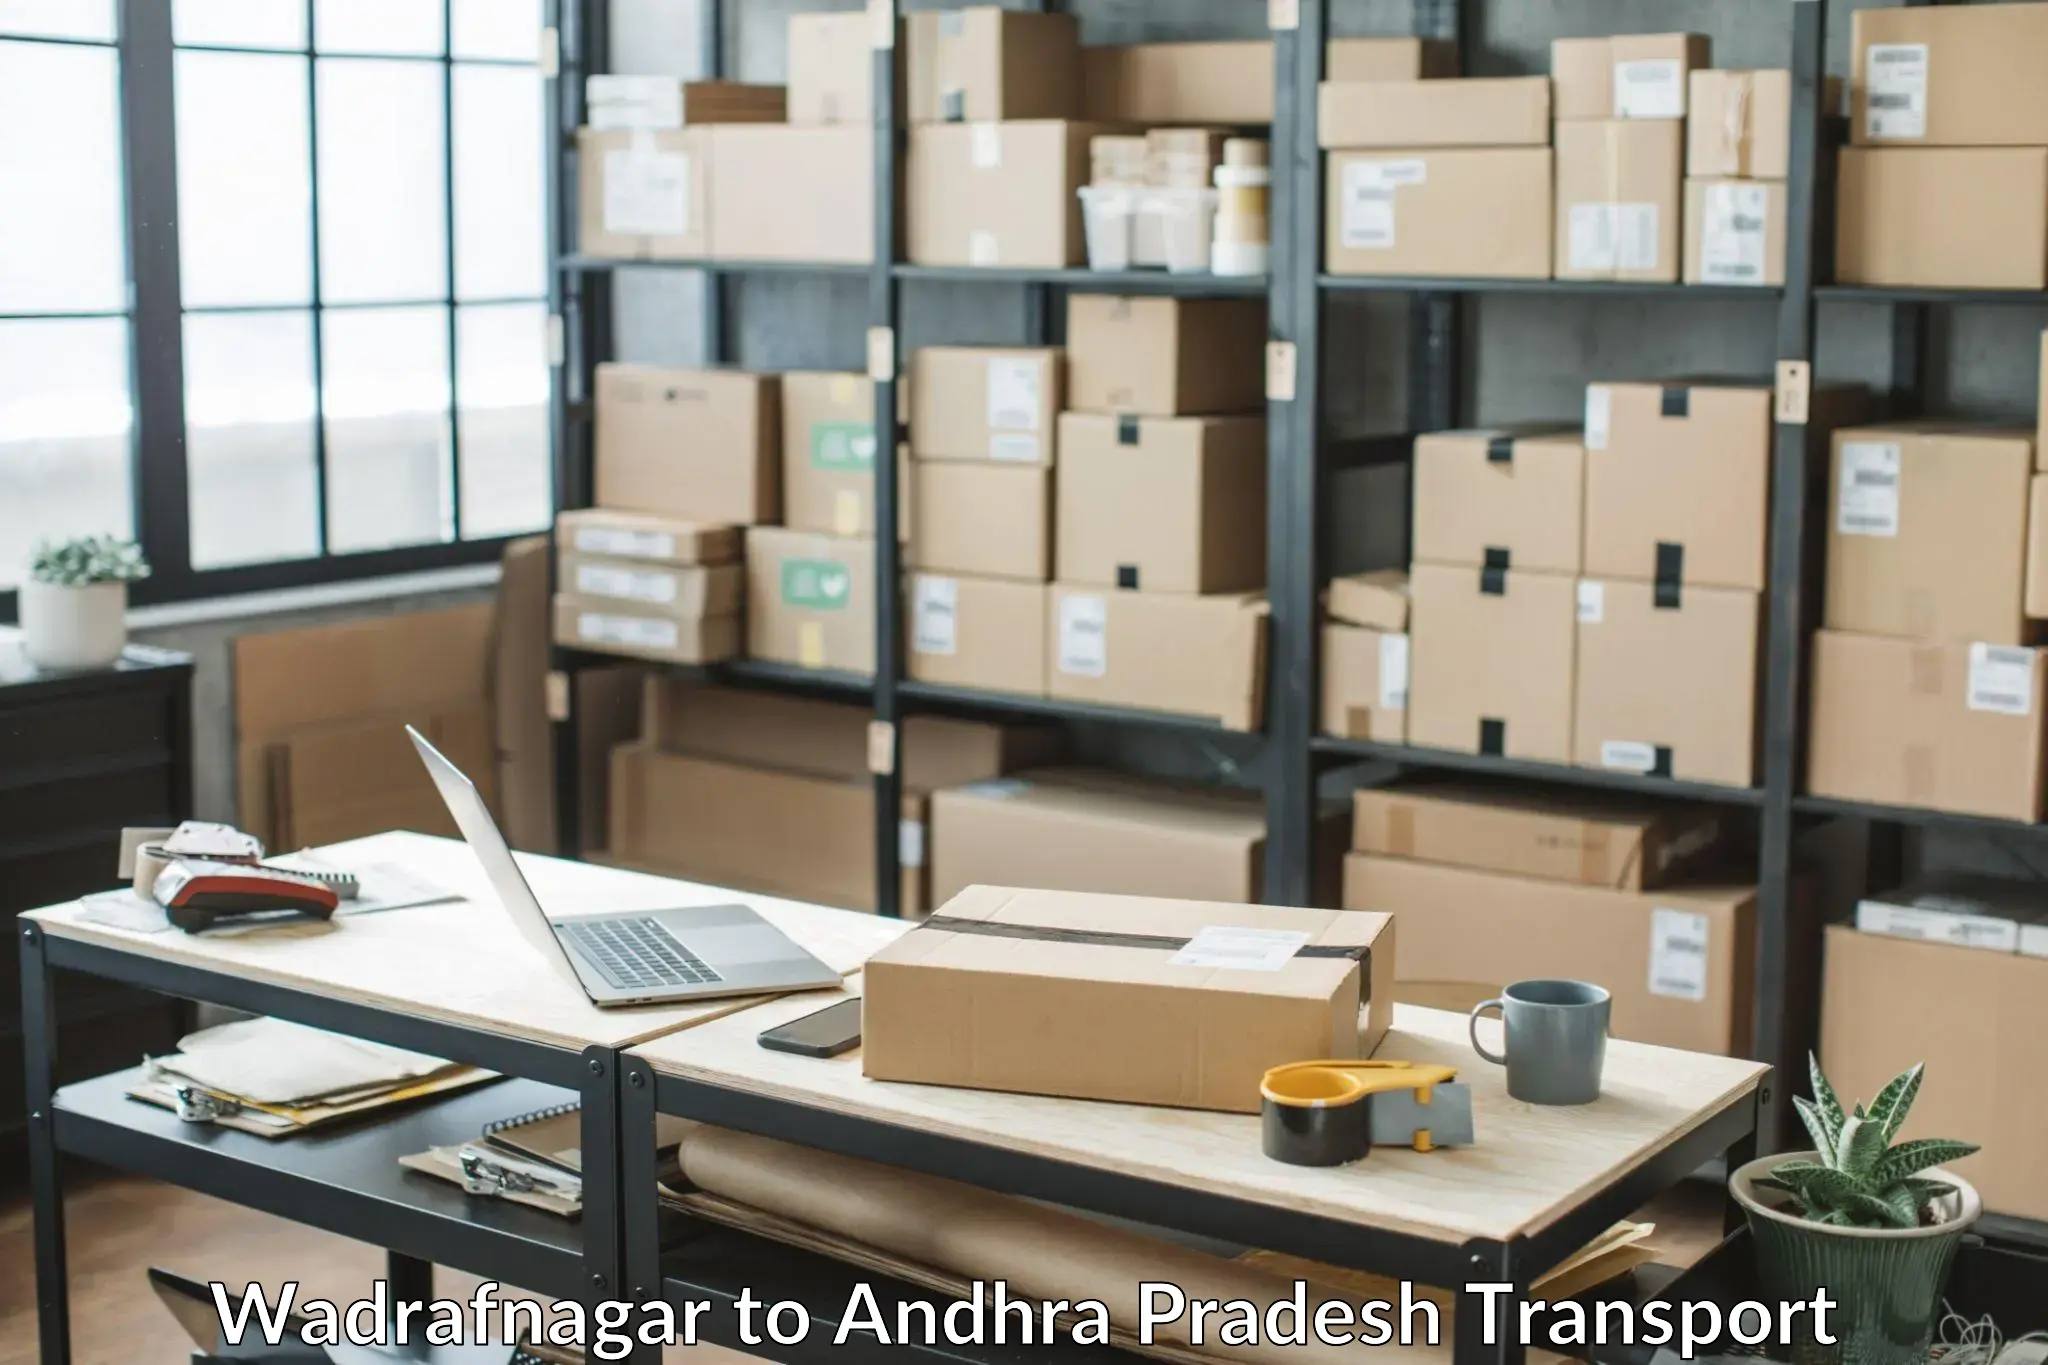 Goods delivery service Wadrafnagar to Tripuranthakam